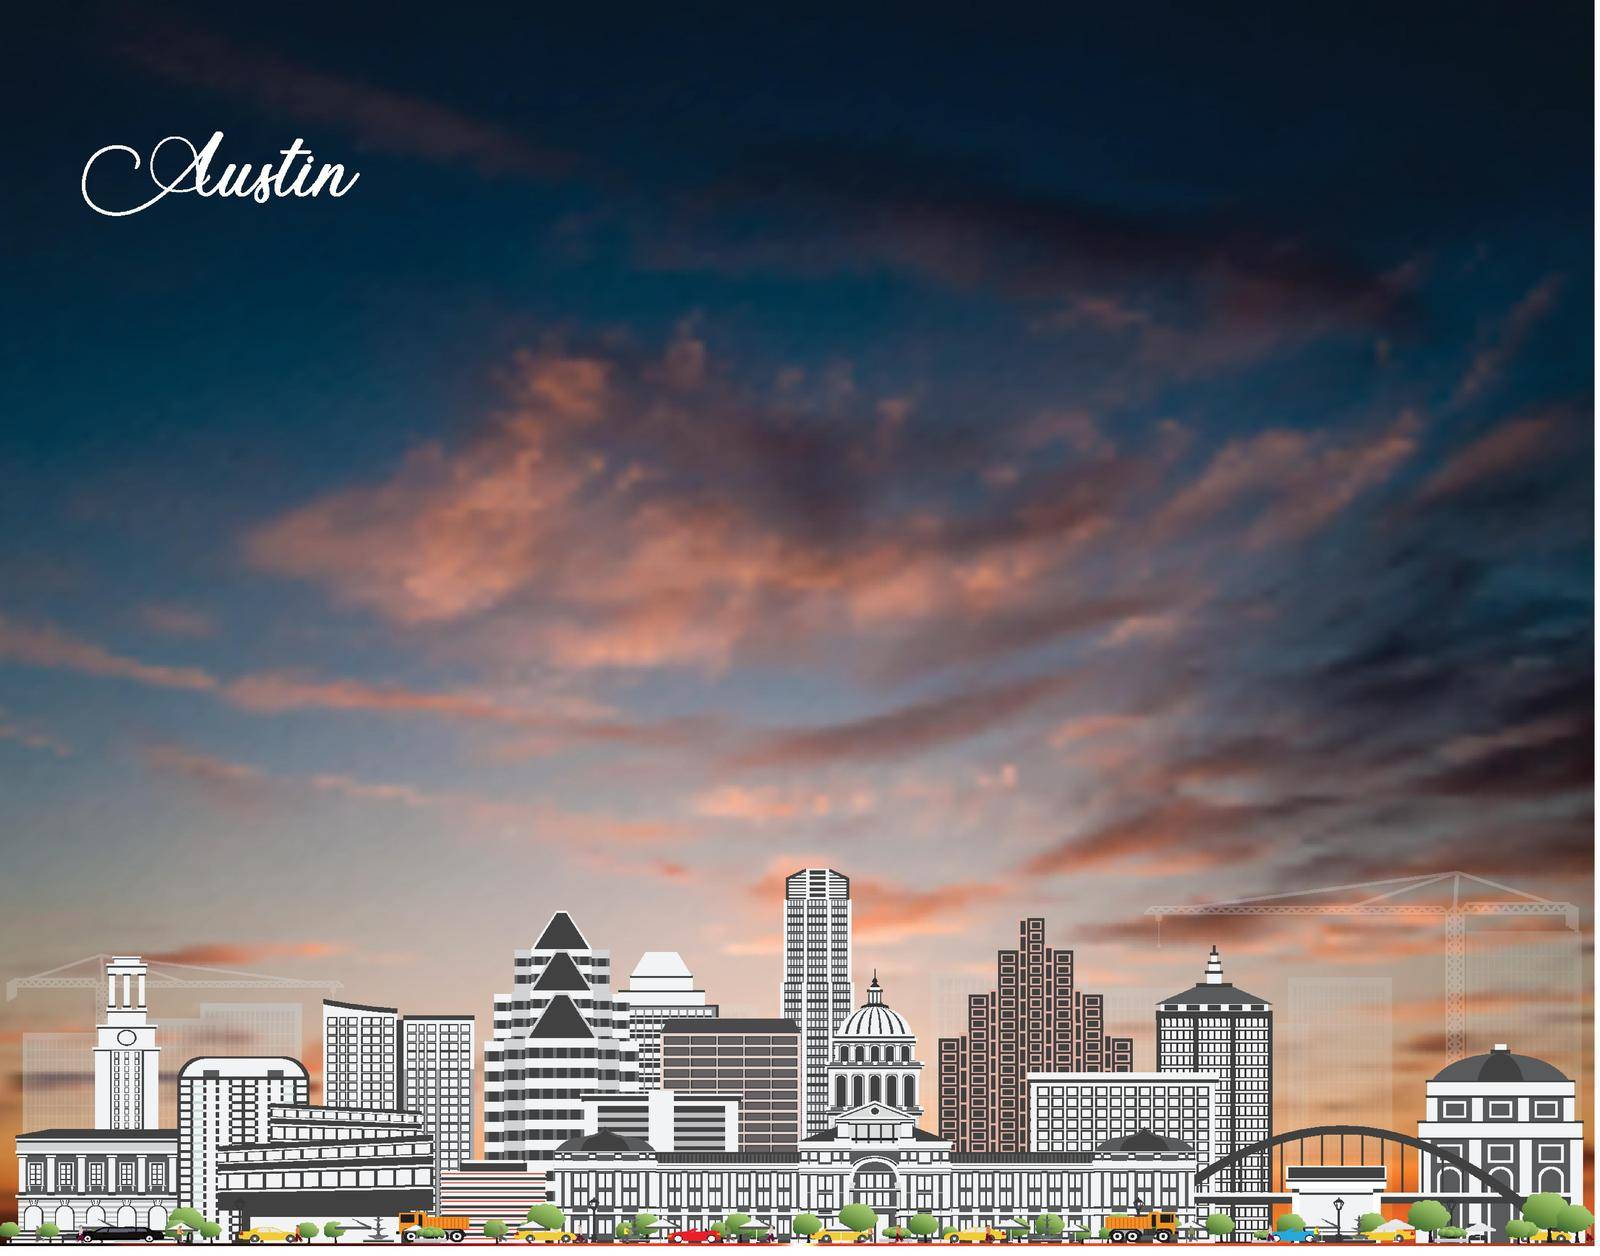 Austin city landscape vectors by Vinhsino